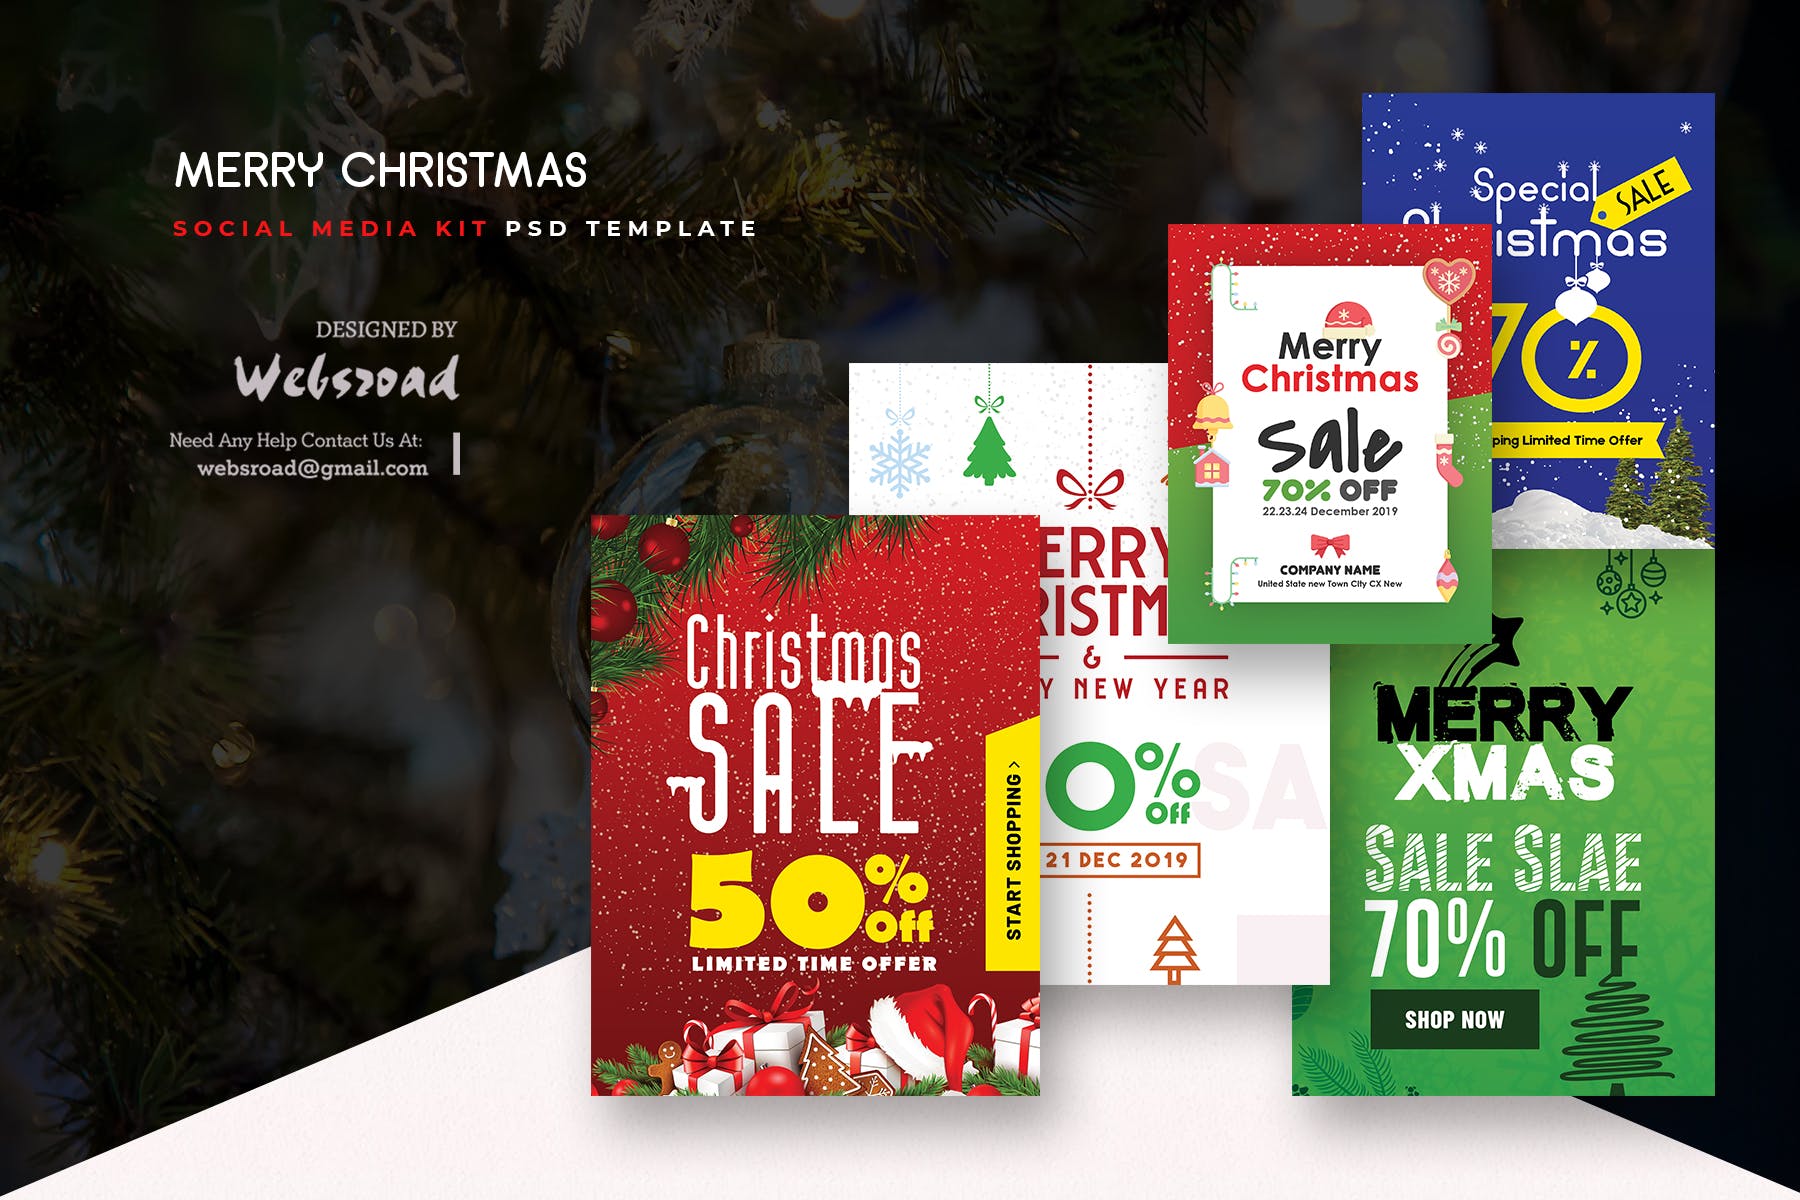 圣诞主题促销社交广告设计PSD模板第一素材精选 Merry Christmas Social Media Kit PSD Templates插图